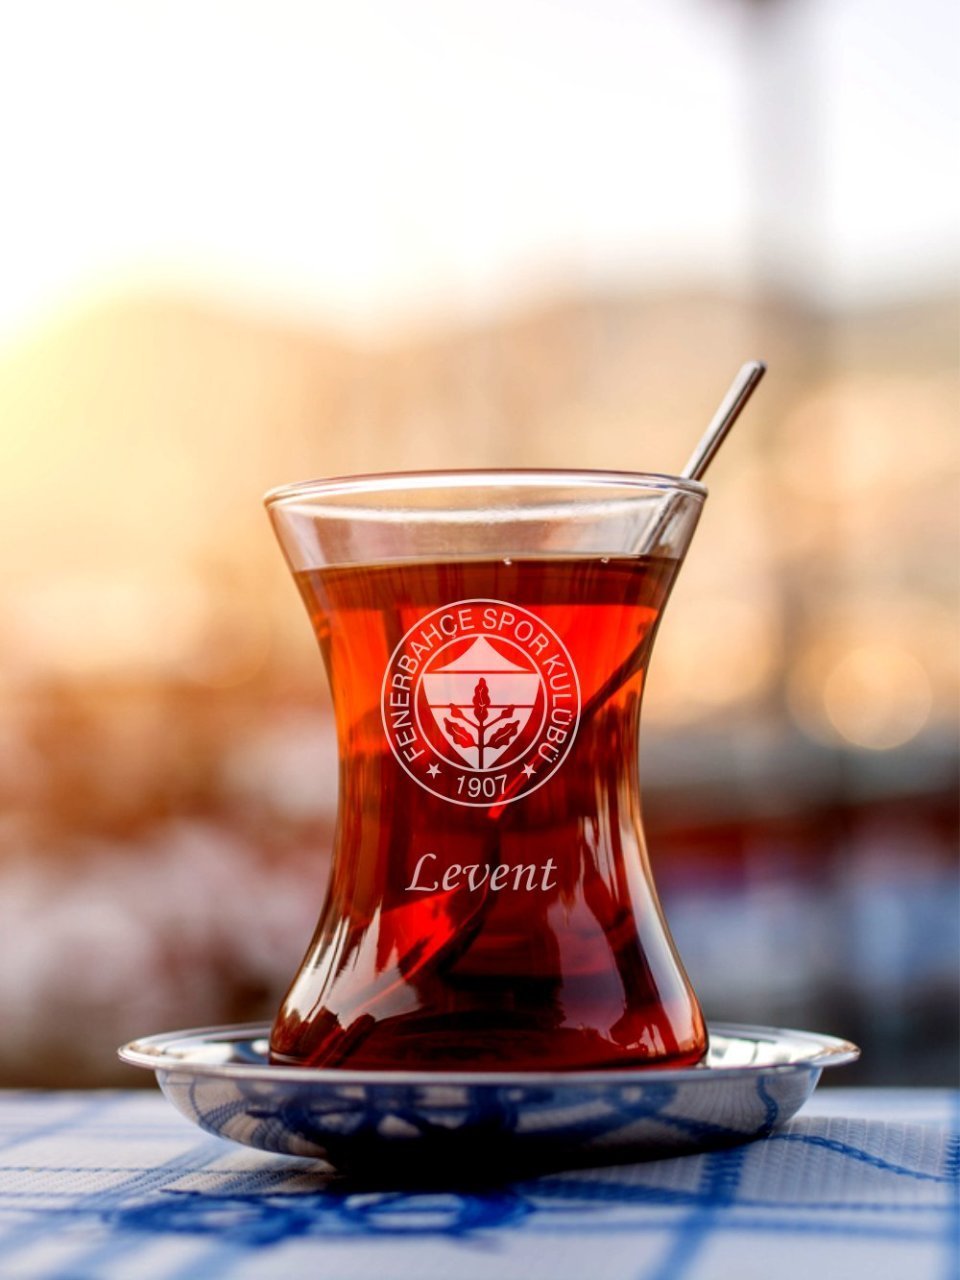 Fenerbahçe Logolu Çay Bardağı